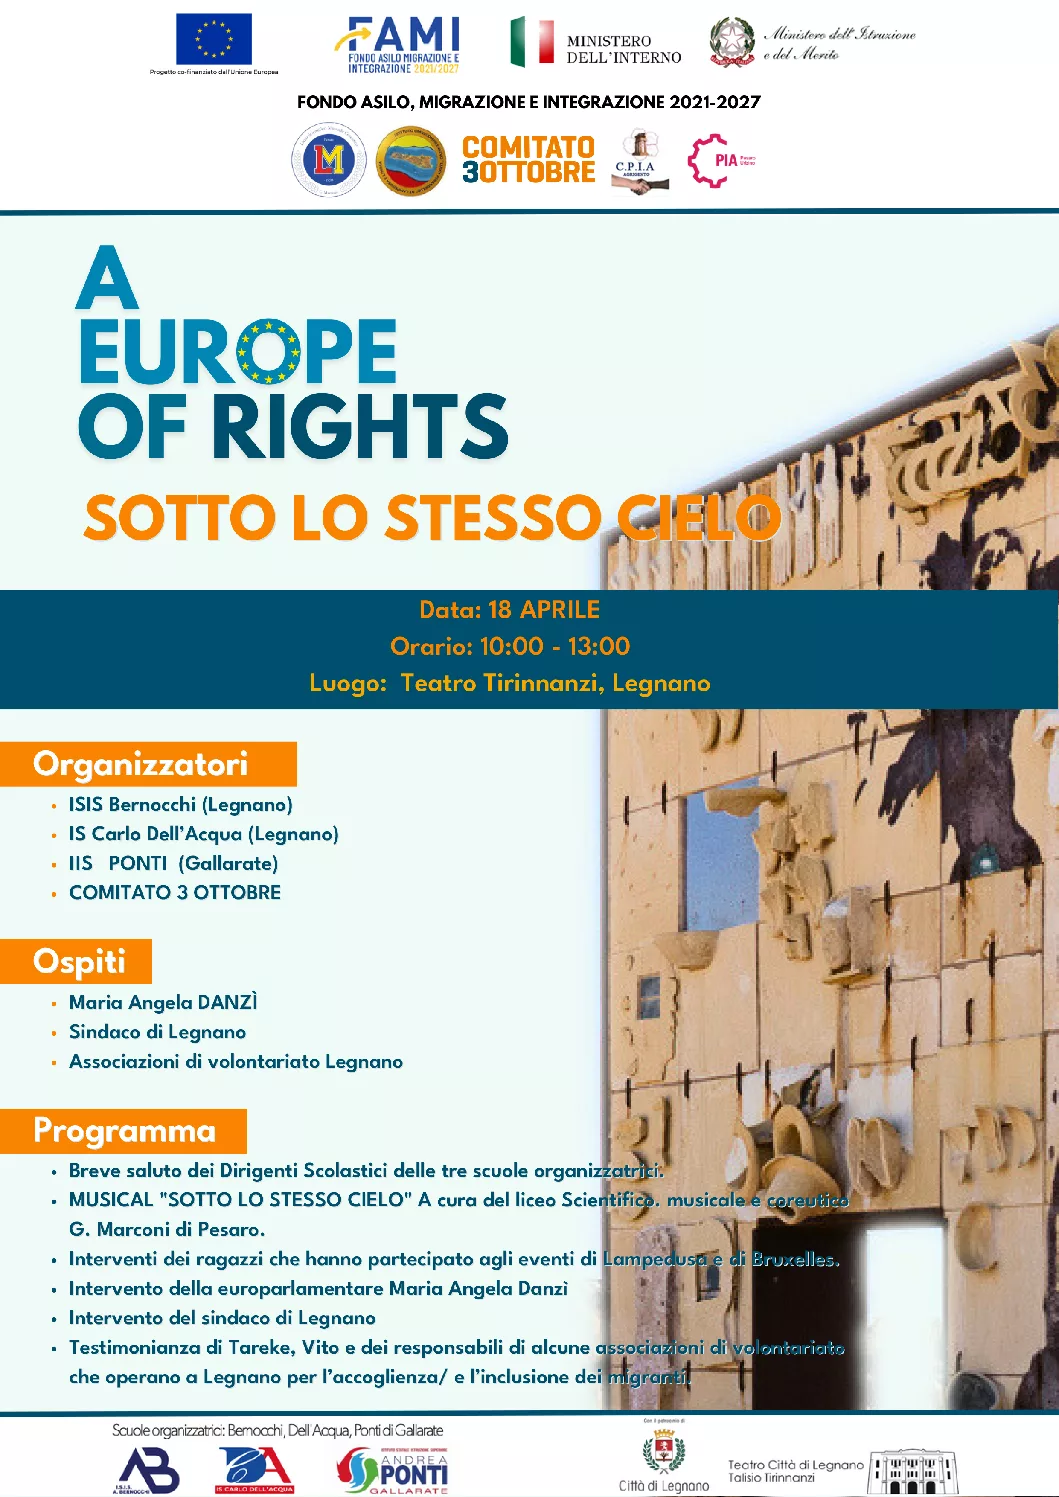 A Europe of Rights: Sotto lo Stesso Cielo